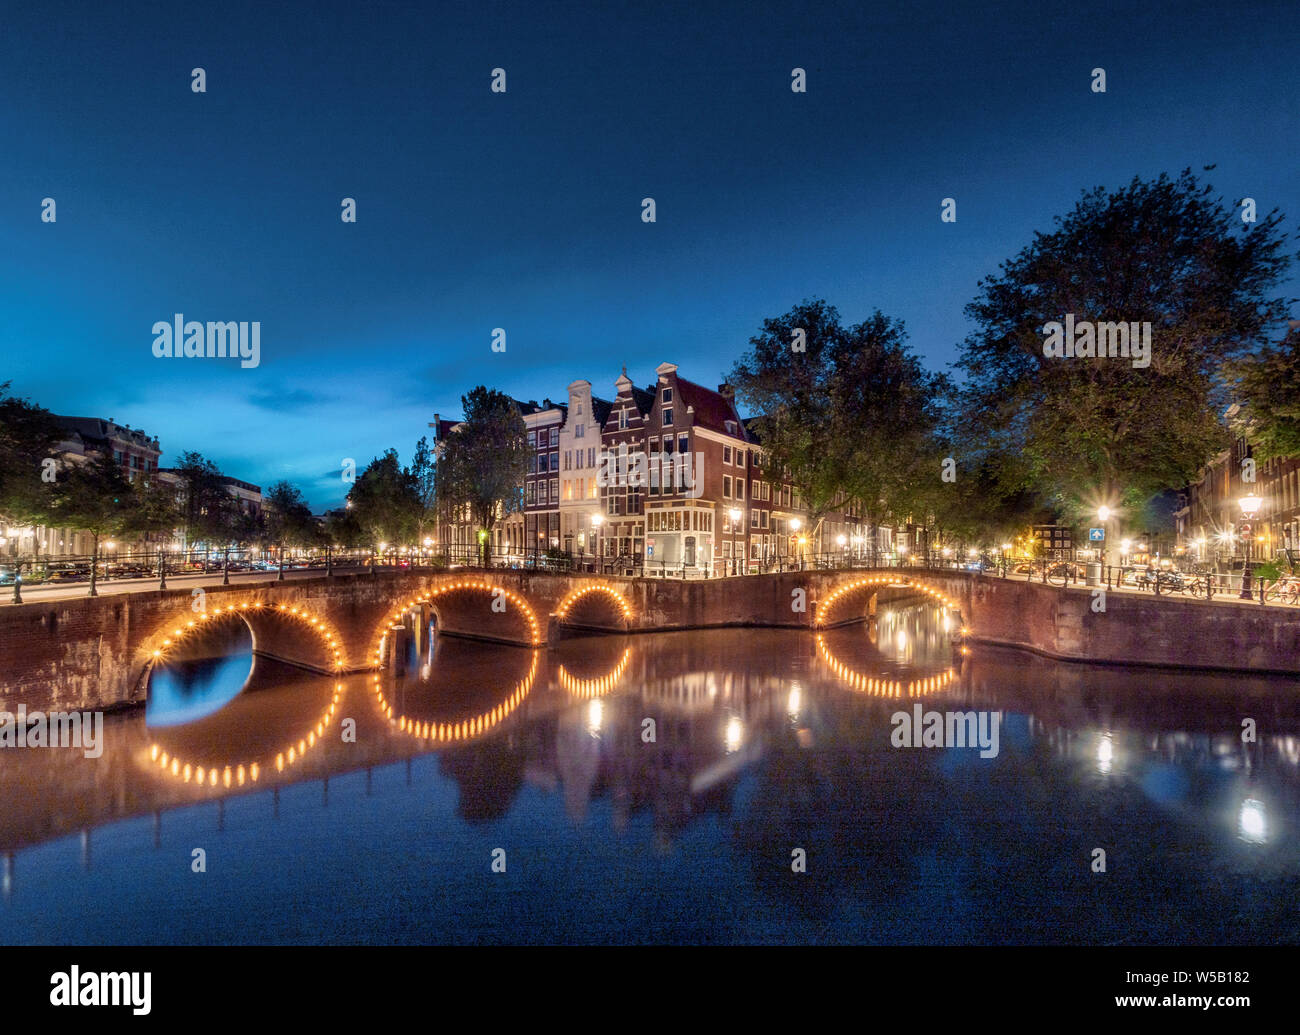 Abendstimmung, Kanal mit Brücke, Keizersgracht und Leidsegracht, Gracht mit historischen Häusern, Amsterdam, Pays-Bas, Nordholland Banque D'Images